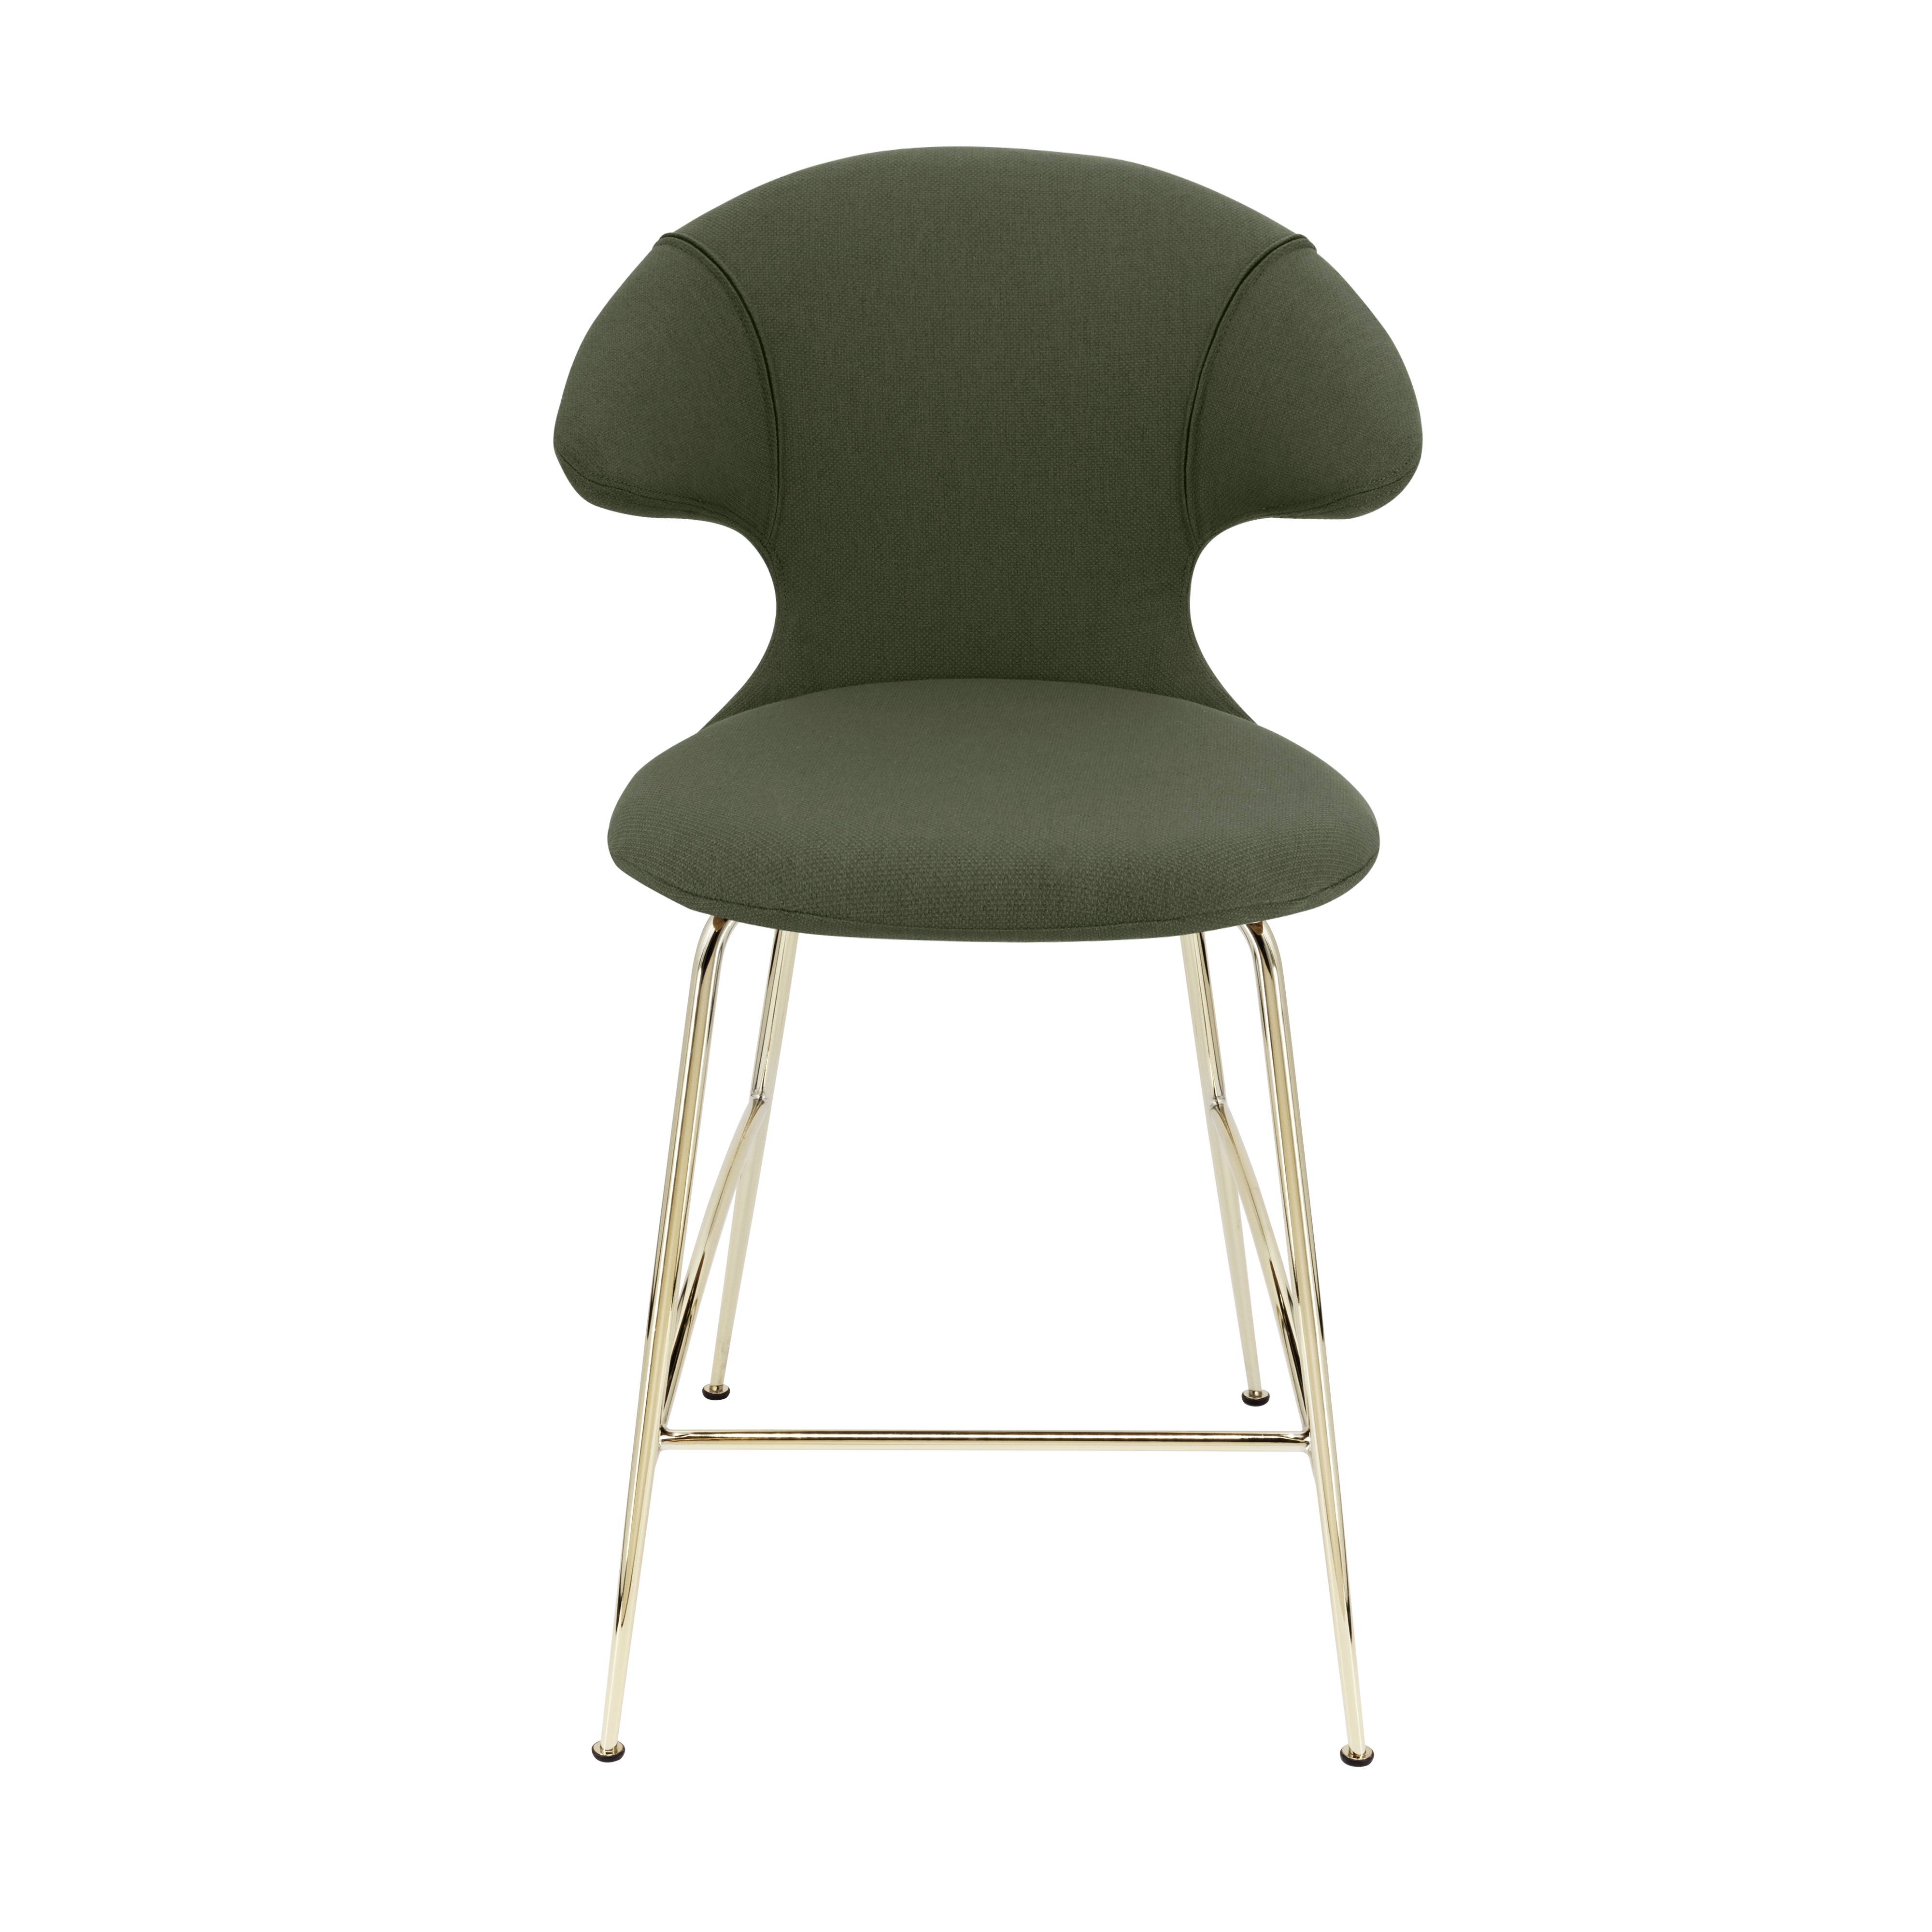 Time Flies Counter Stuhl in Racing Green präsentiert im Onlineshop von KAQTU Design AG. Barstuhl mit Armlehne ist von Umage